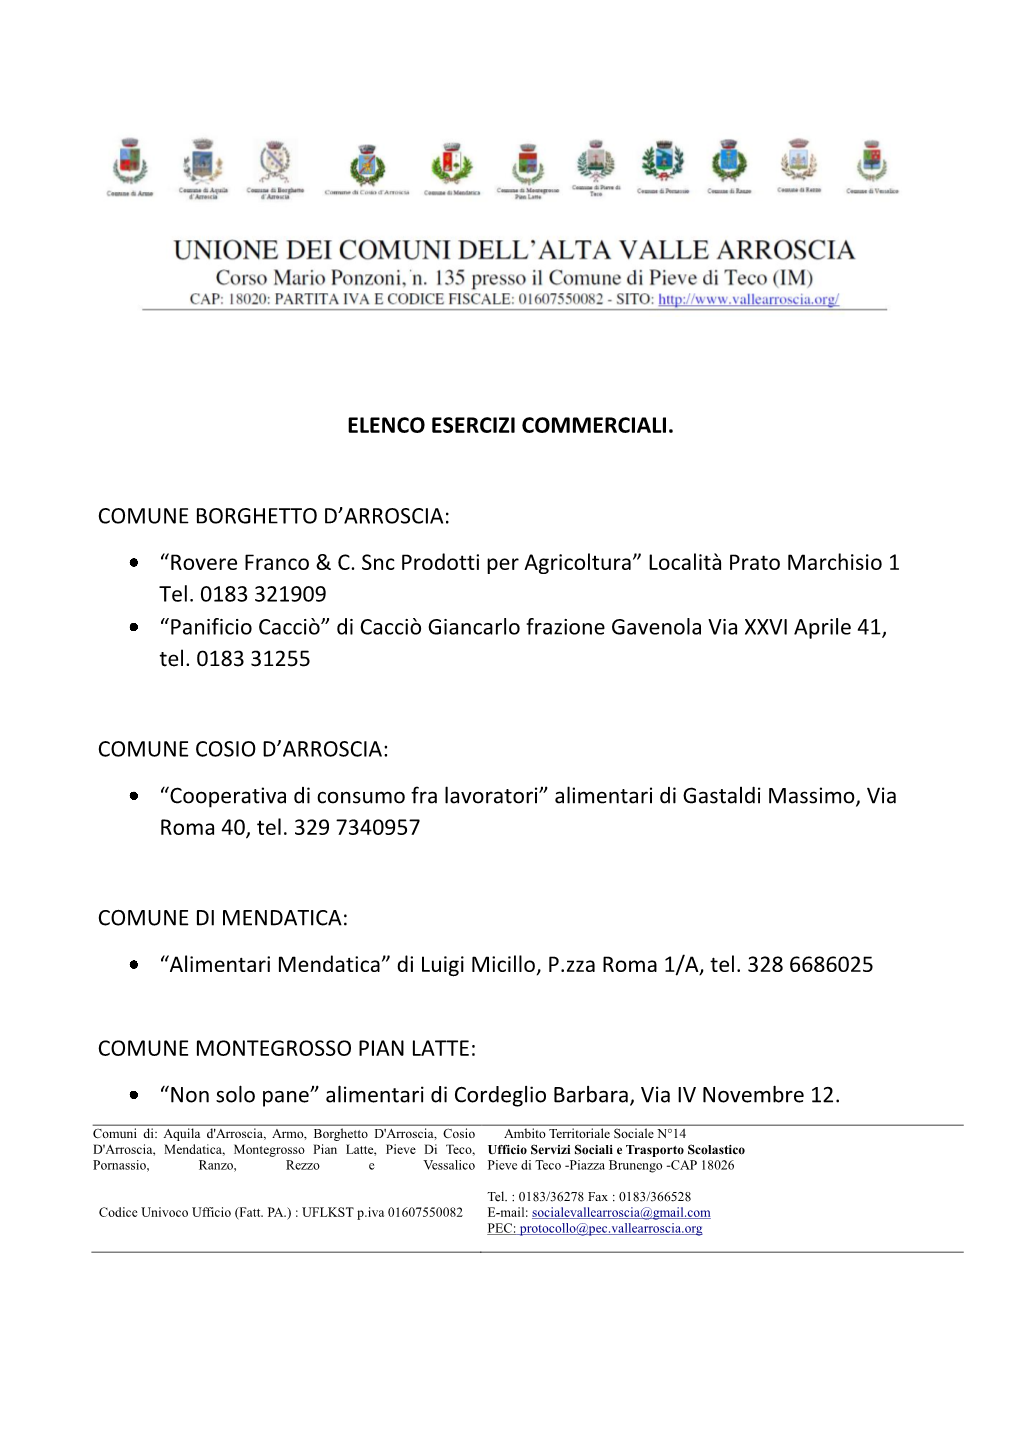 ELENCO ESERCIZI COMMERCIALI. COMUNE BORGHETTO D'arroscia: “Rovere Franco & C. Snc Prodotti Per Agricoltura”